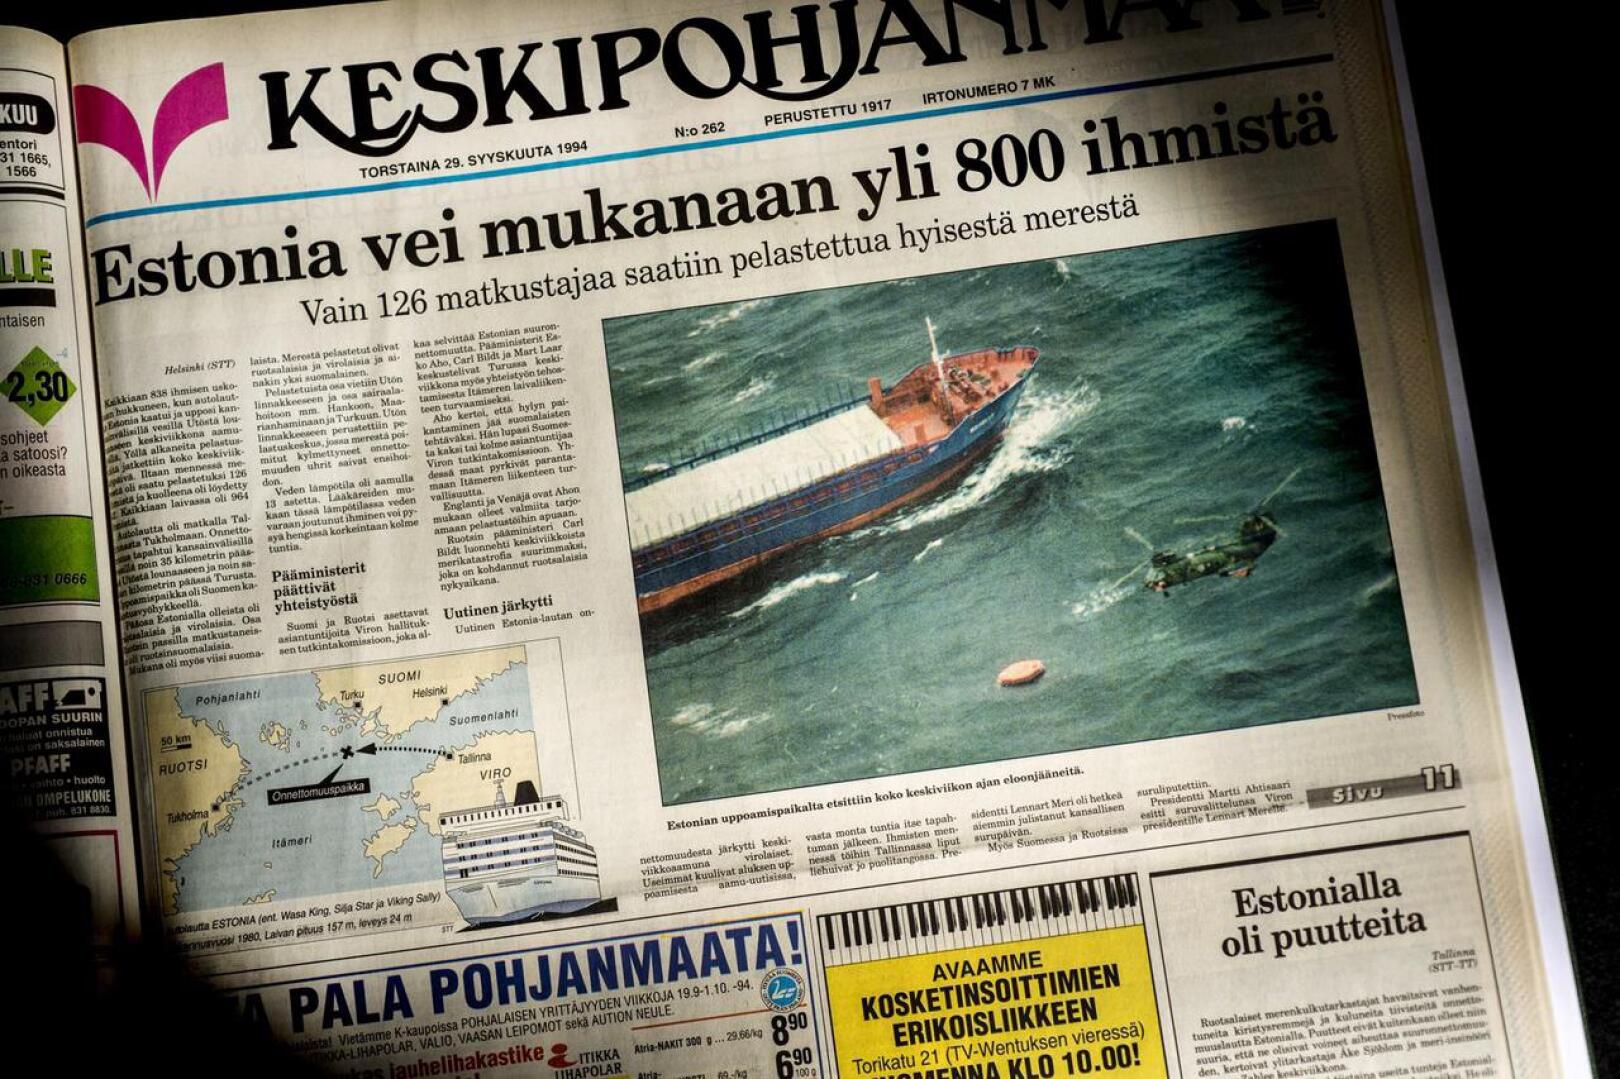 Estonian uppoamista käsiteltiin Keskipohjanmaassa 29. syyskuuta vuonna 1994.